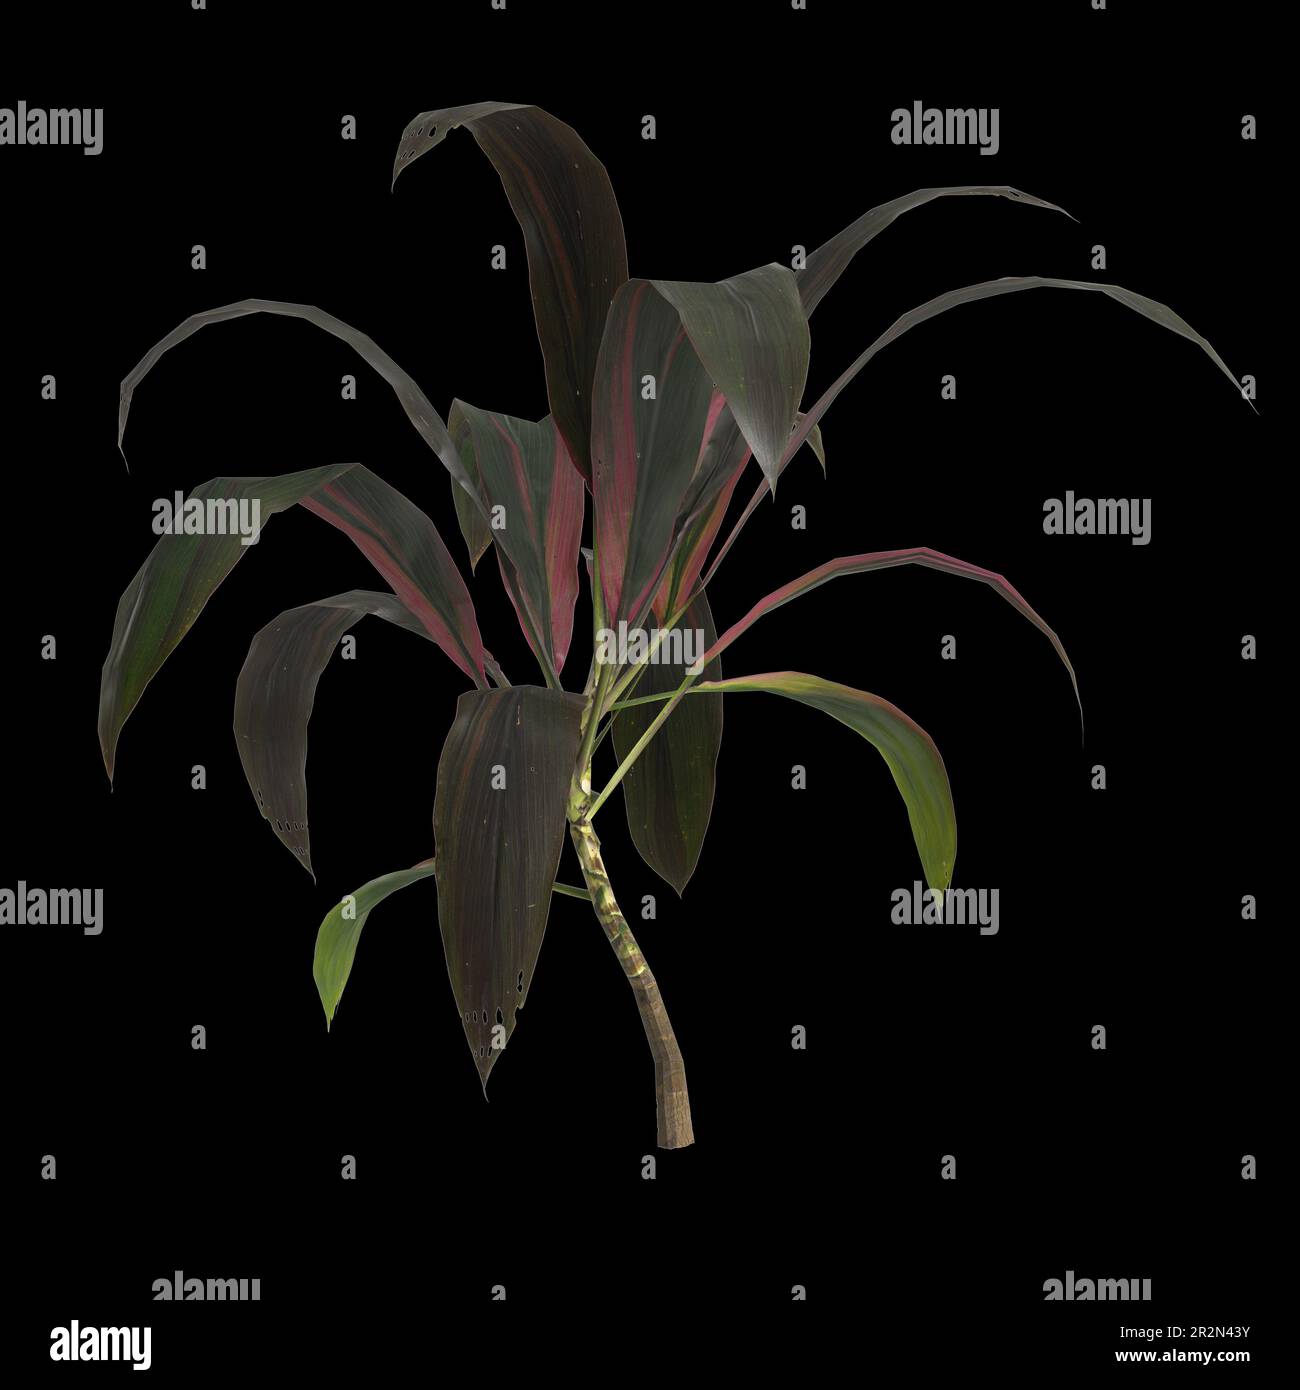 3d illustration of set cordyline fruticosa plant isolated on black background Stock Photo